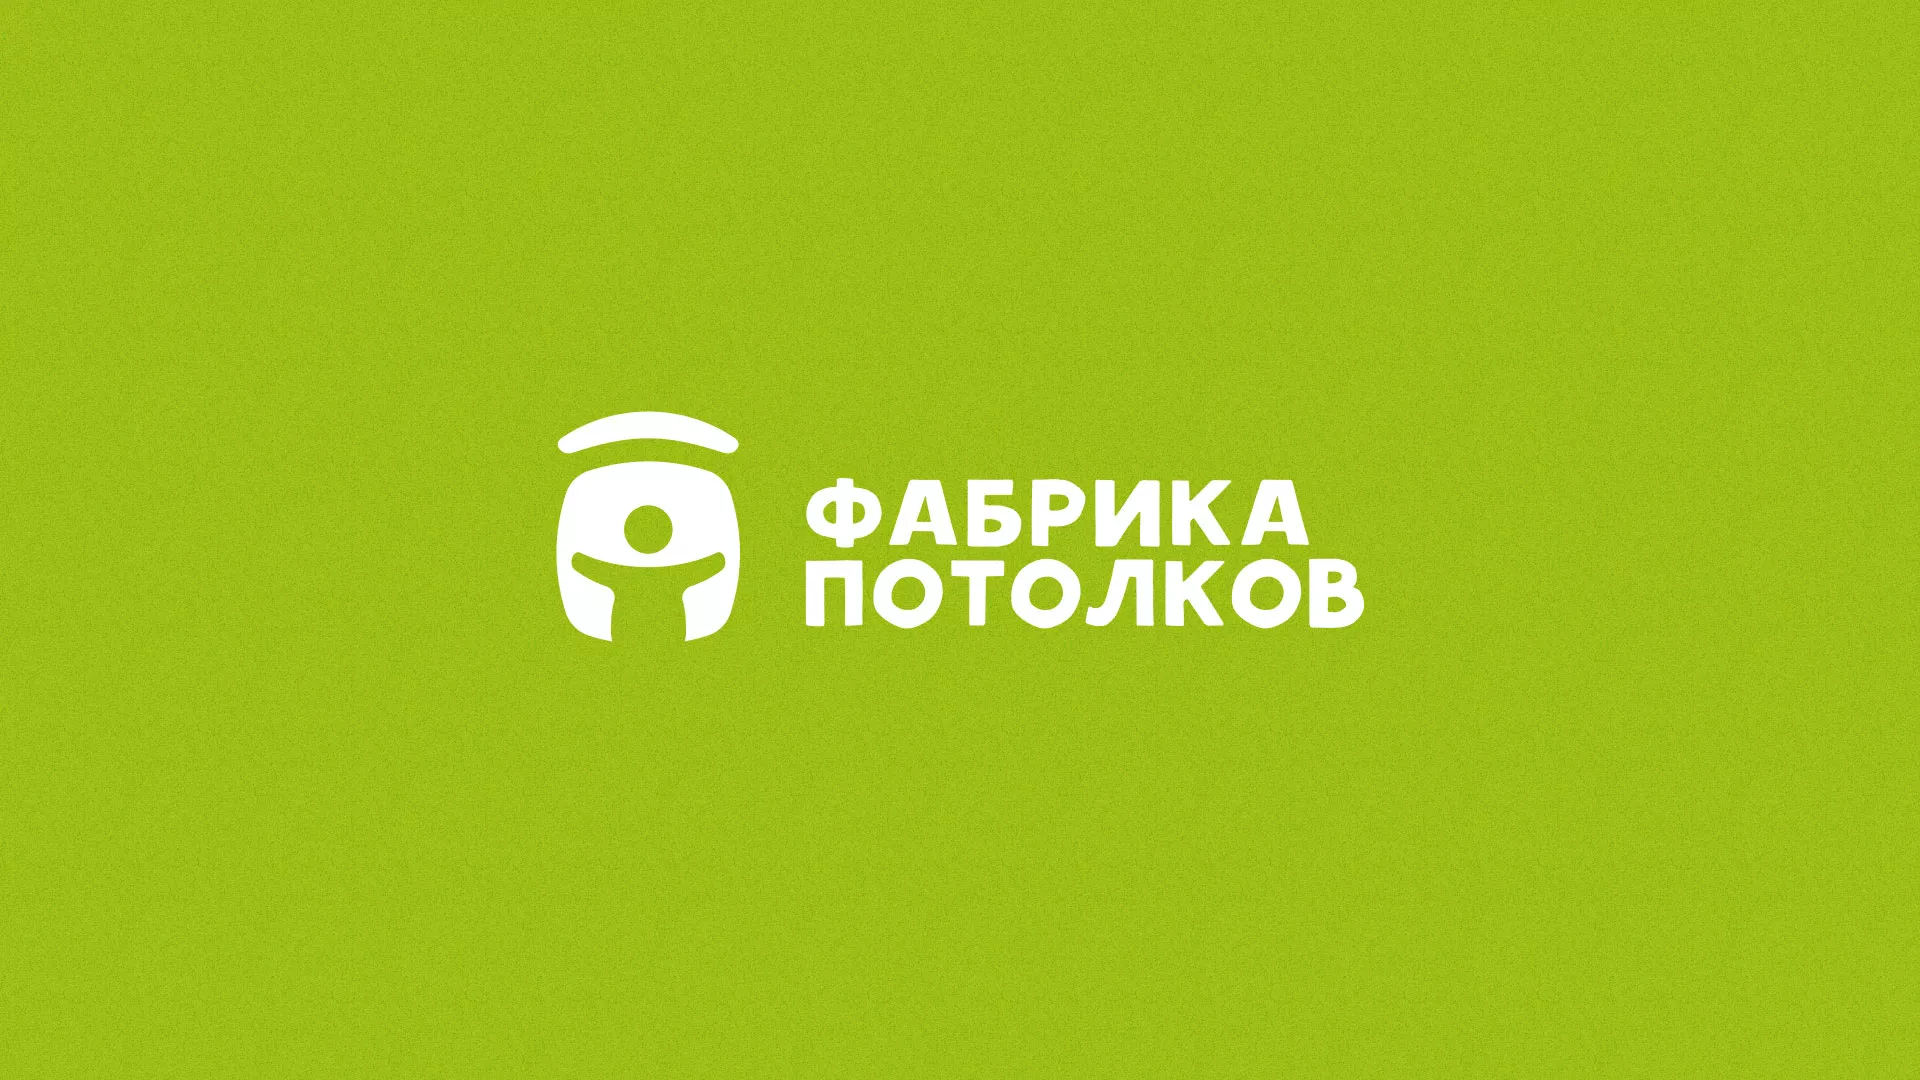 Разработка логотипа для производства натяжных потолков в Павловске